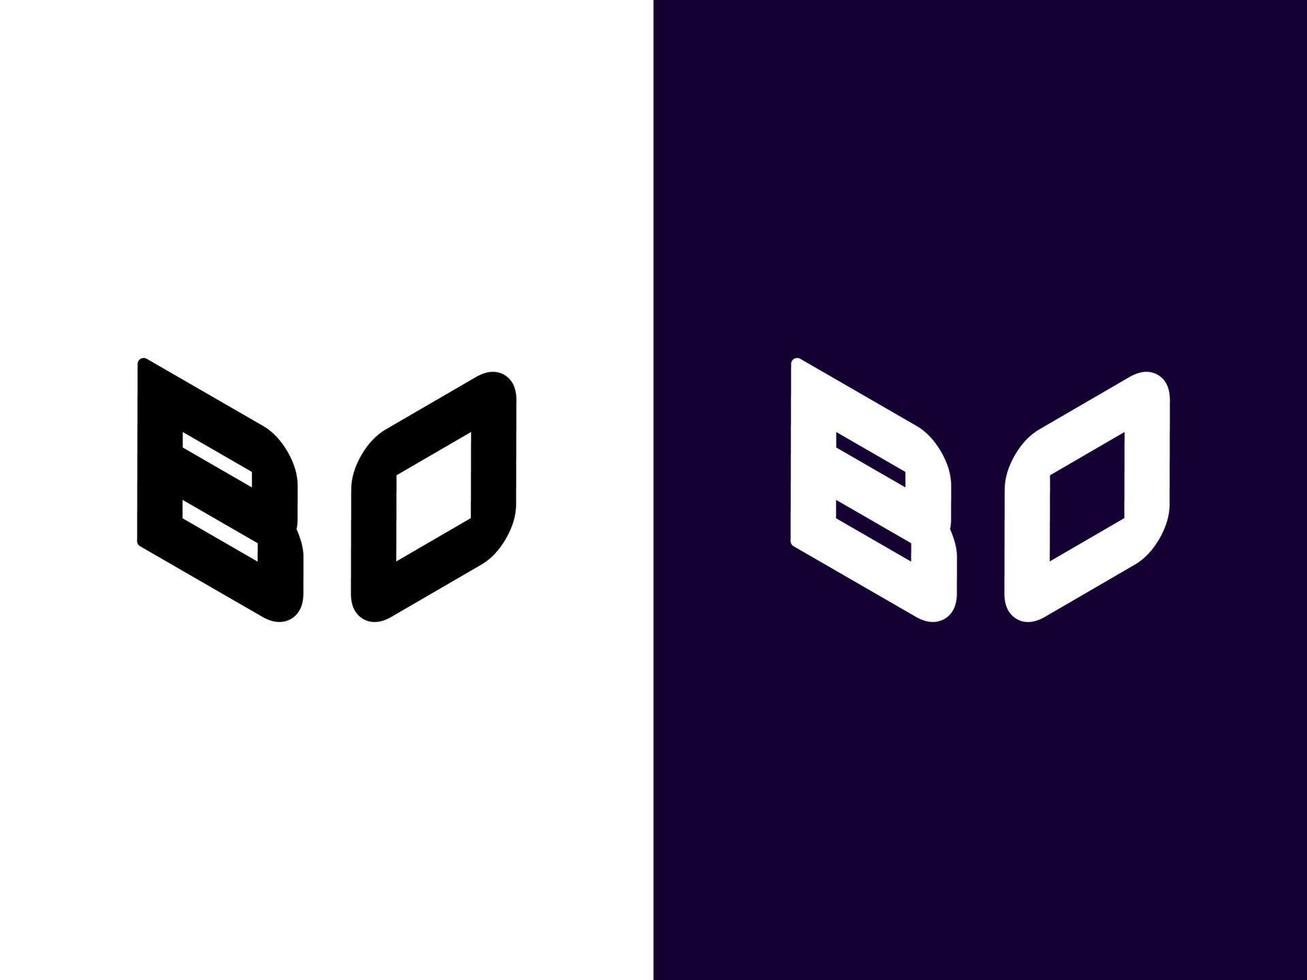 lettre initiale bo création de logo 3d minimaliste et moderne vecteur